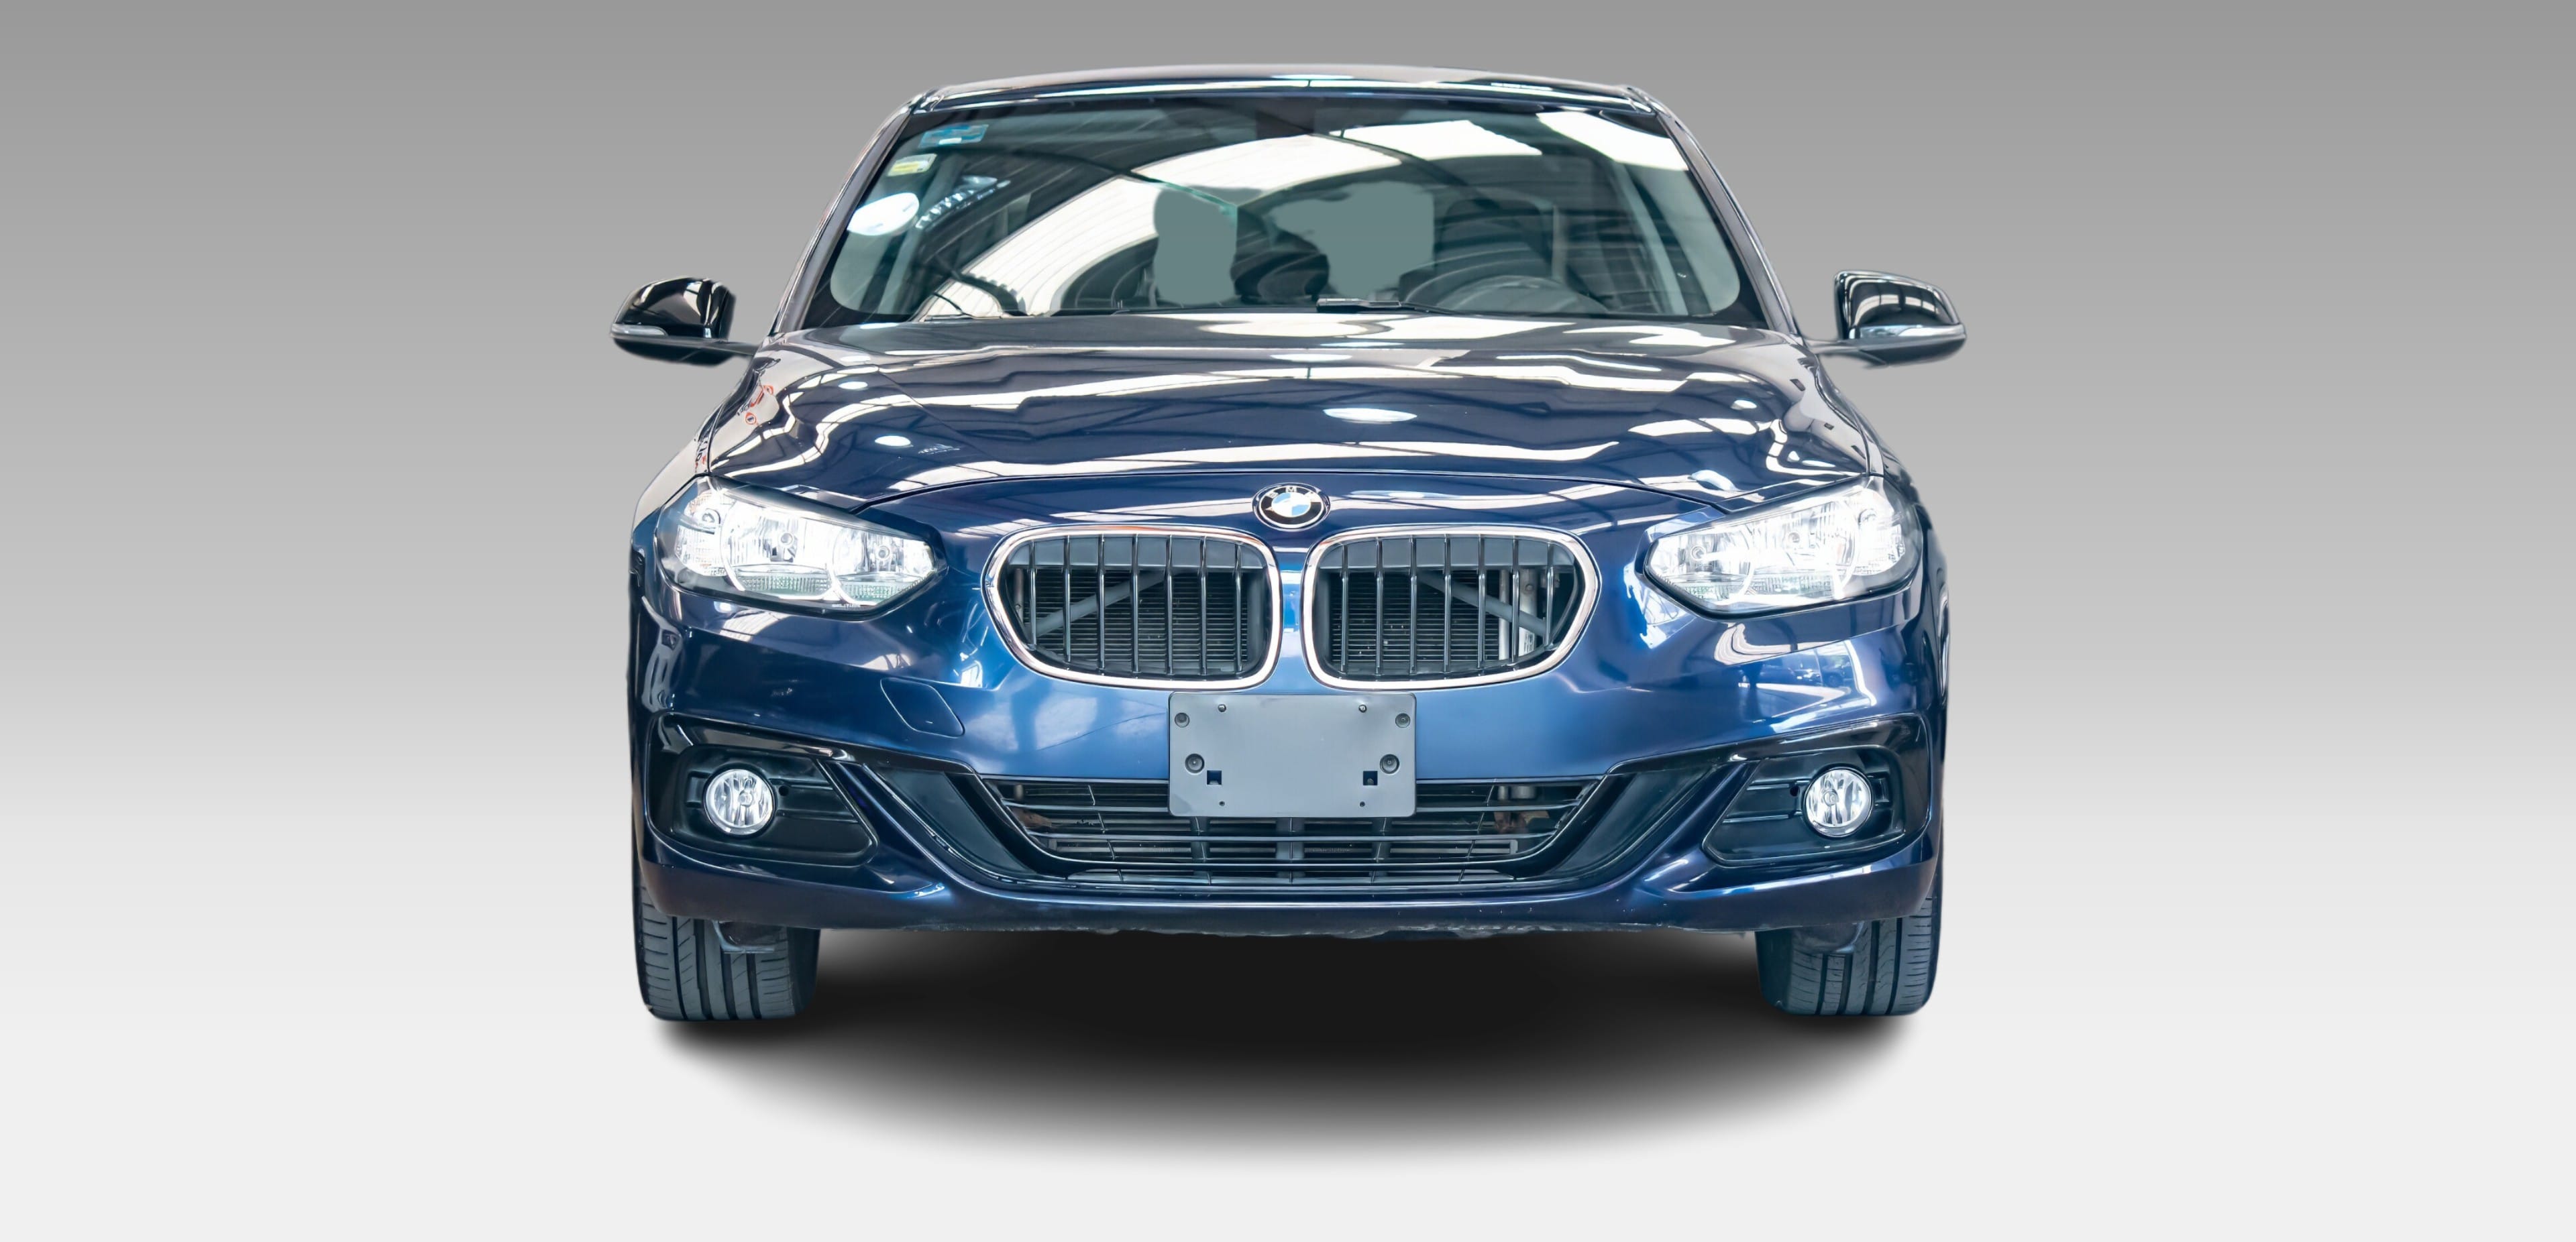 BMW Serie 1 Sedán 2019 llega a México desde $489,900 pesos